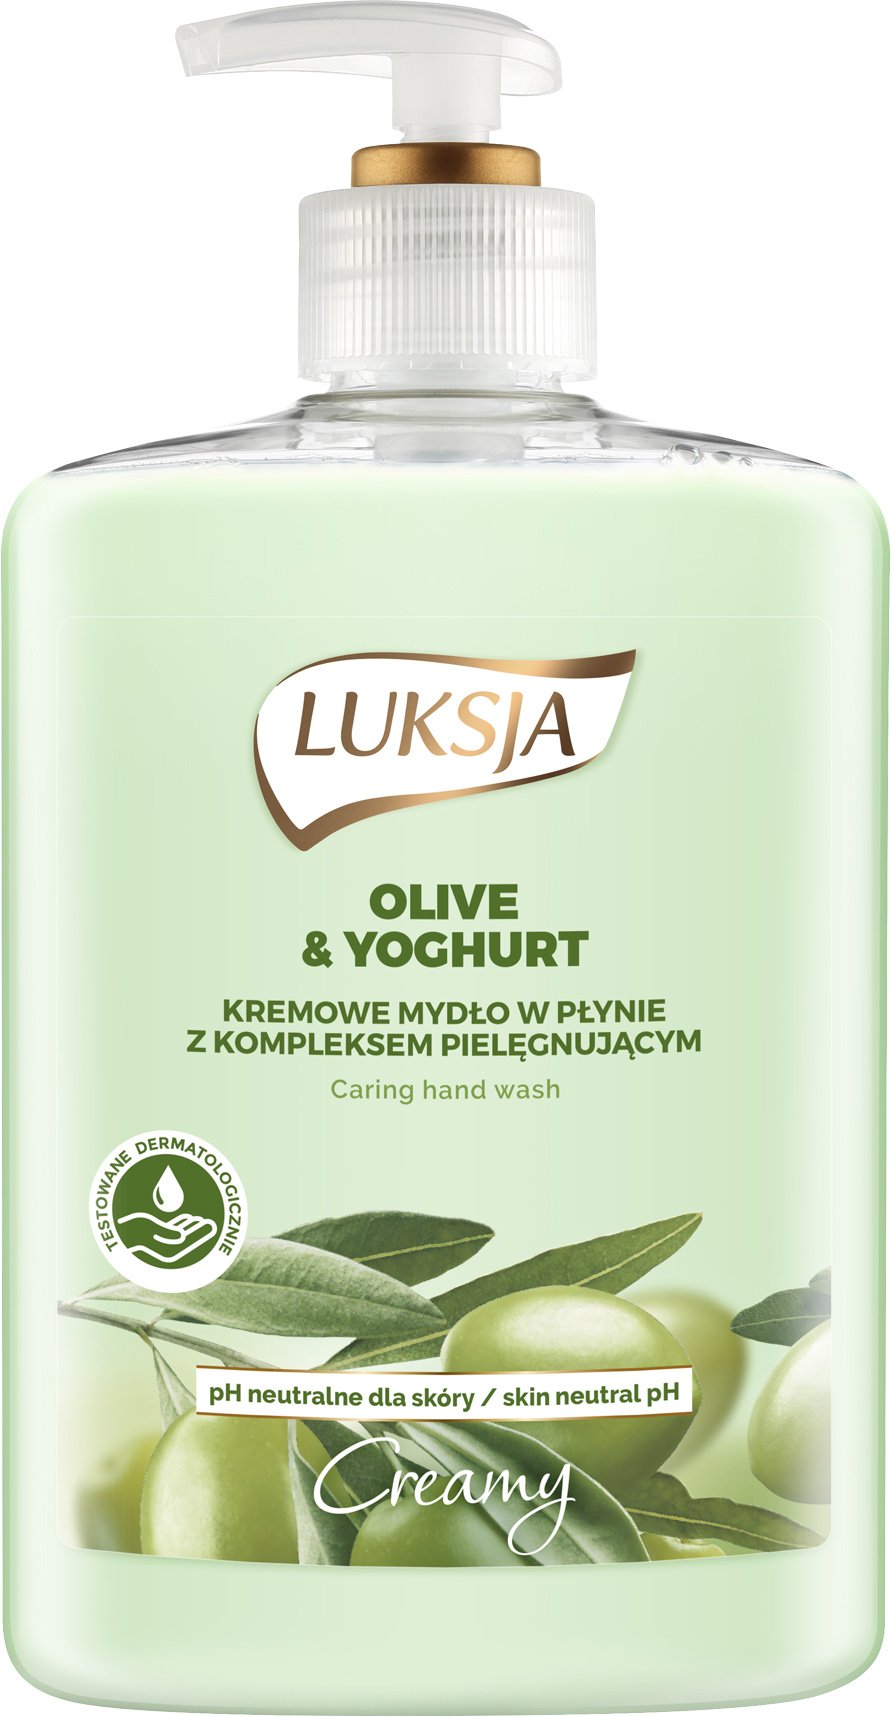 Жидкое крем-мыло Luksja Olive & Yoghurt Hand Wash, с дозатором, 500 мл - фото 1